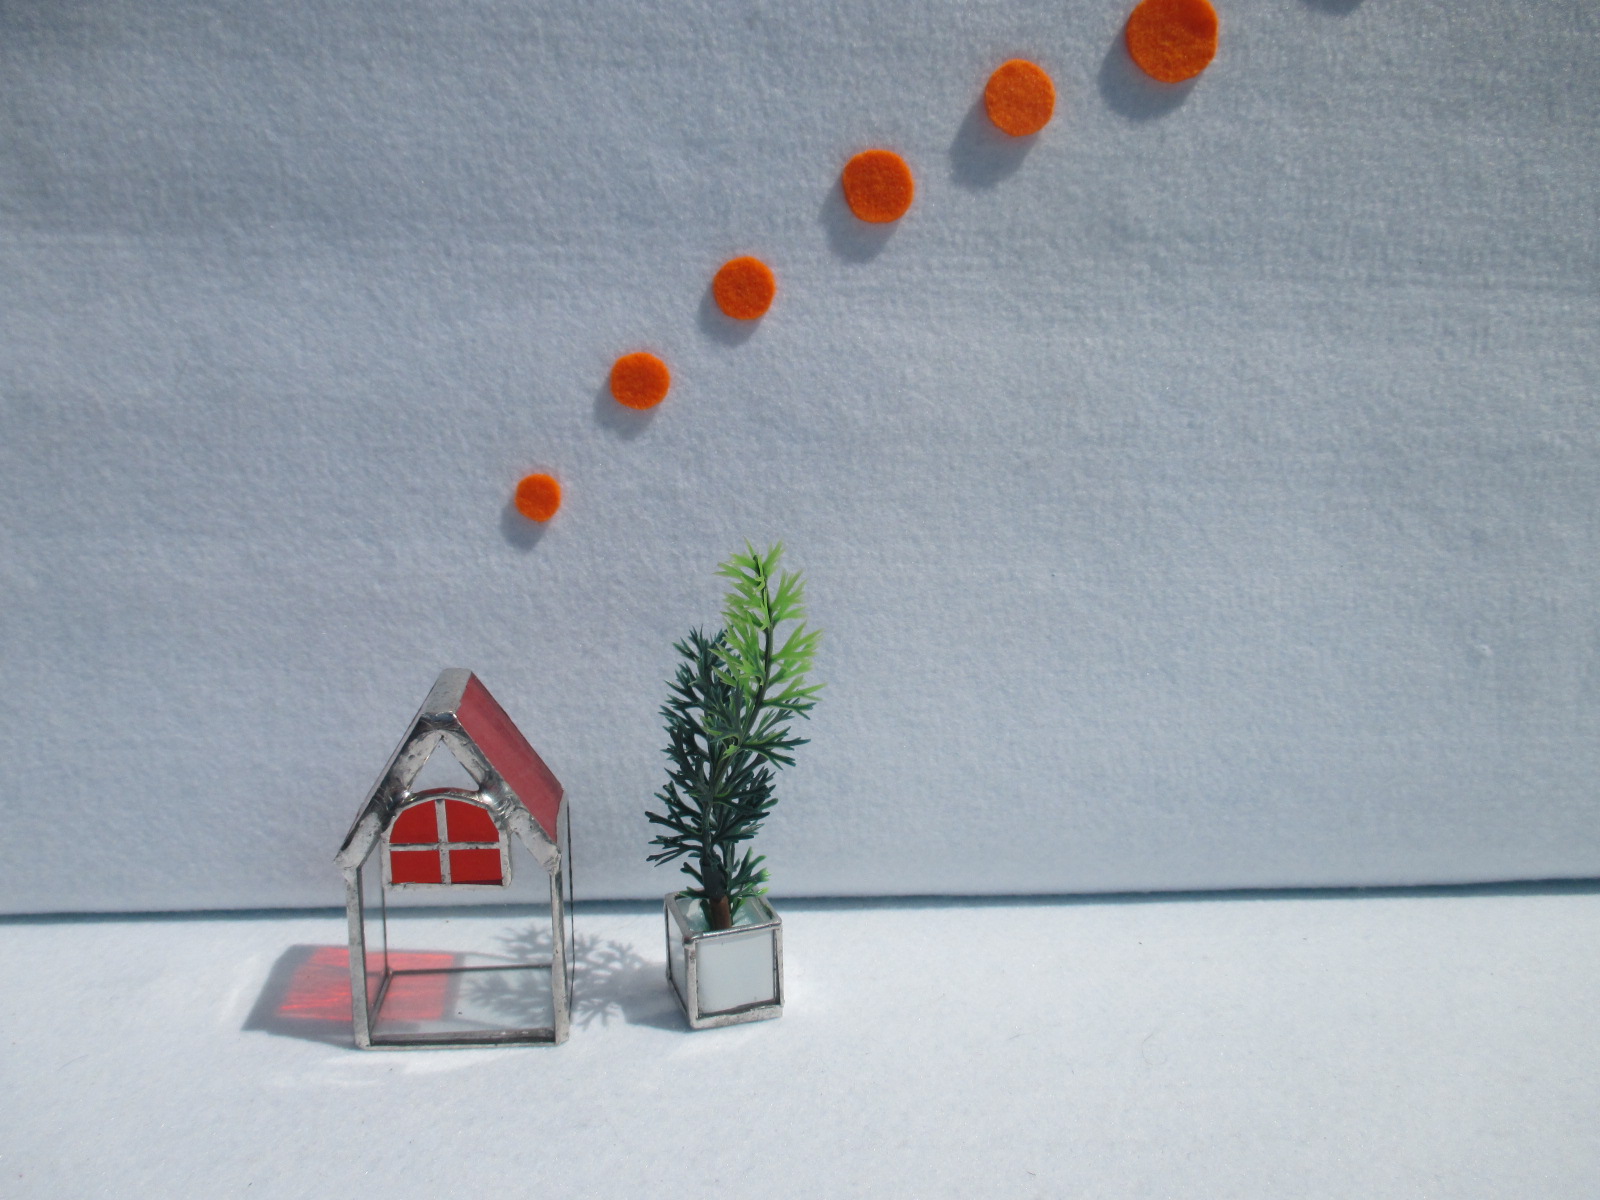 ２ 虹の町の家々 オレンジ屋根の家 オブジェ ｽﾃﾝﾄﾞｸﾞﾗｽ Iichi ハンドメイド クラフト作品 手仕事品の通販